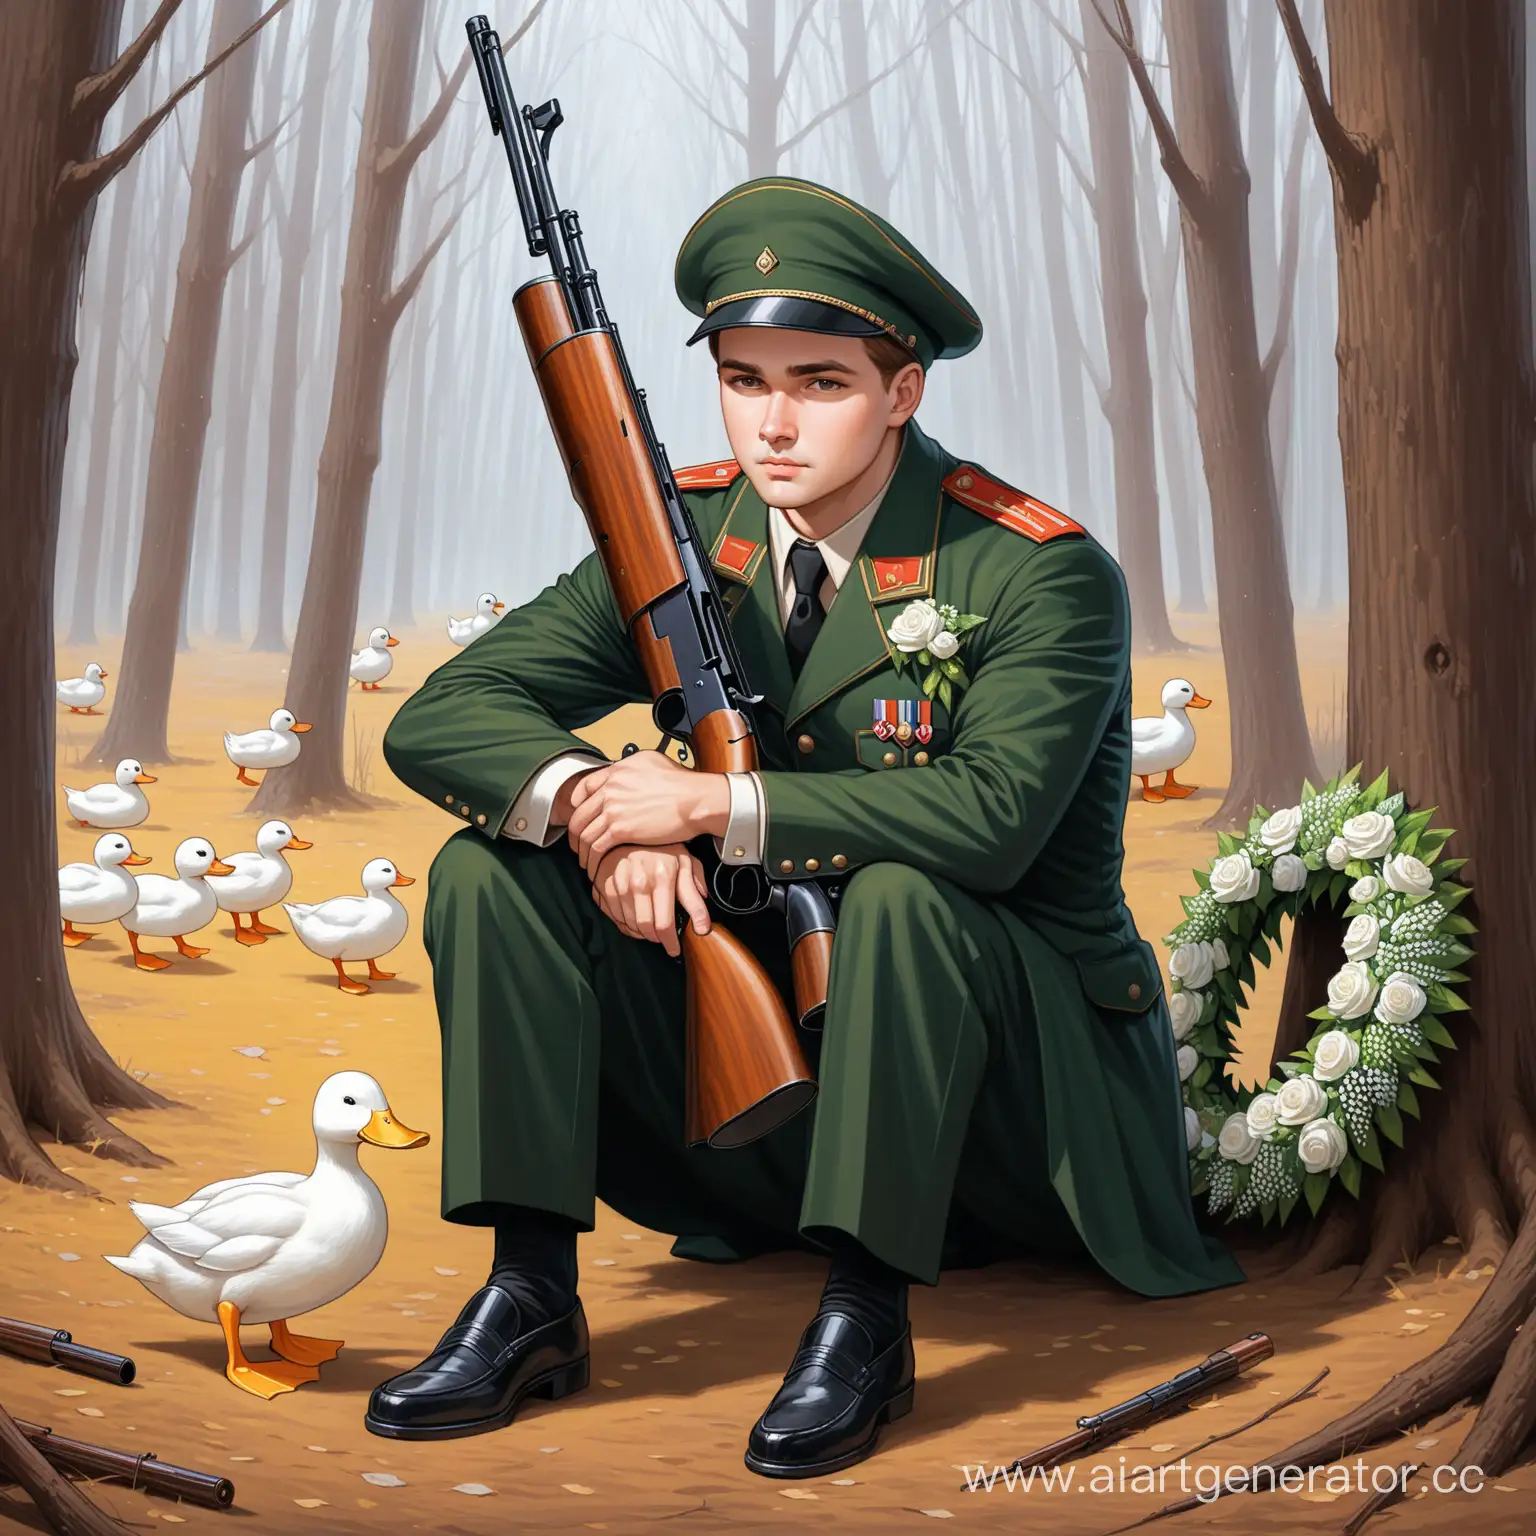 Главный герой пьесы "Утиная охота" Александра Вампилова, он сидит в обнимку с ружьем и похоронным венком